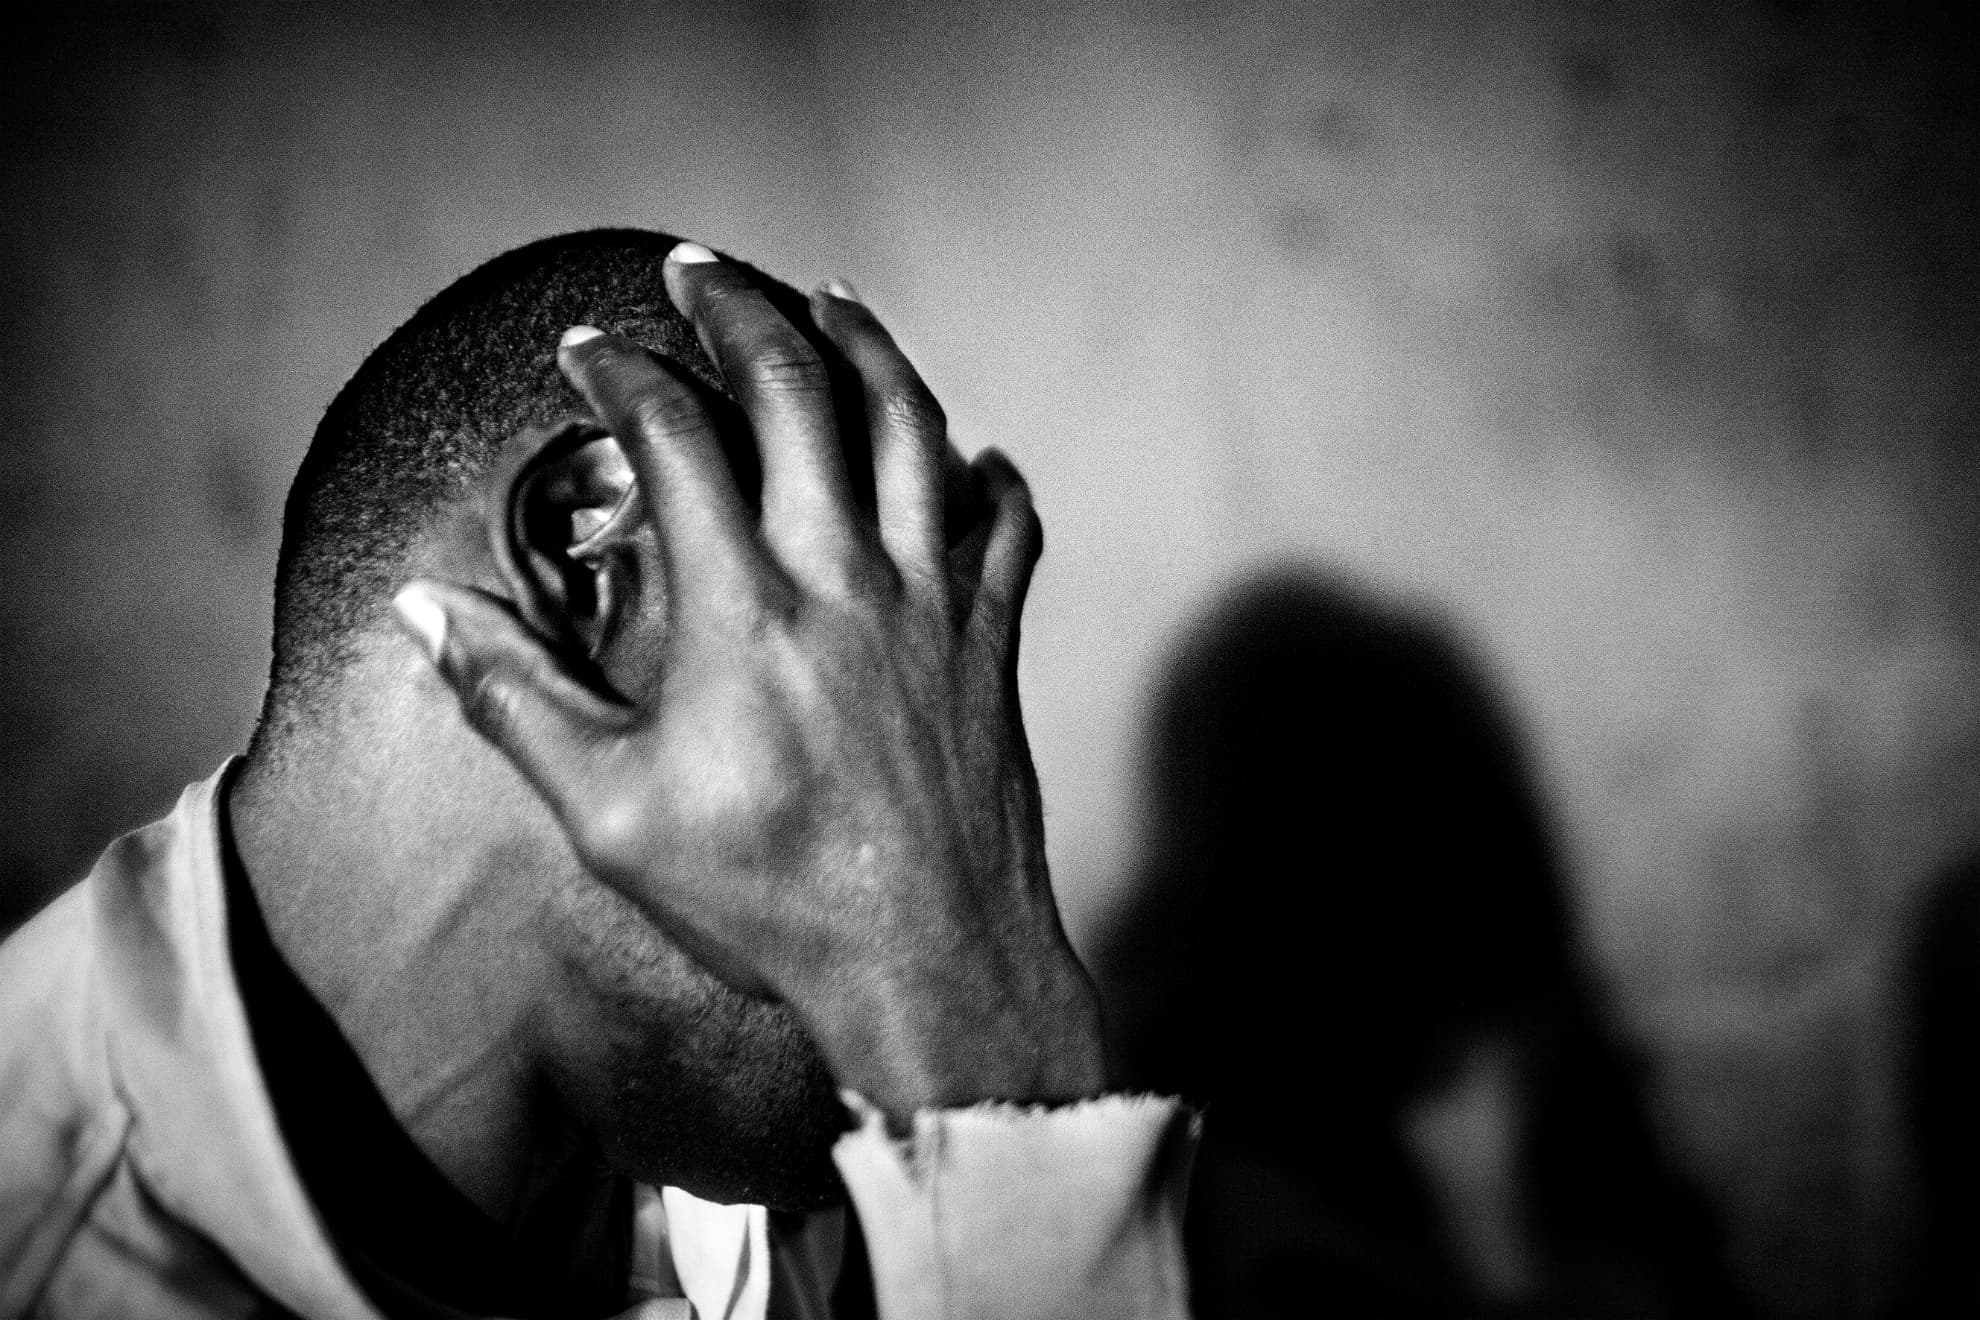 Este hombre del Congo tuvo que emigrar de su país a causa de la guerra y la pobreza de su familia. En un hospital de Argelia, unas jeringuillas infectadas le causaron una enfermedad degenerativa en sus piernas. La ALCS (Asociación de Lucha Contra el SIDA) en Rabat se está haciendo cargo de él.